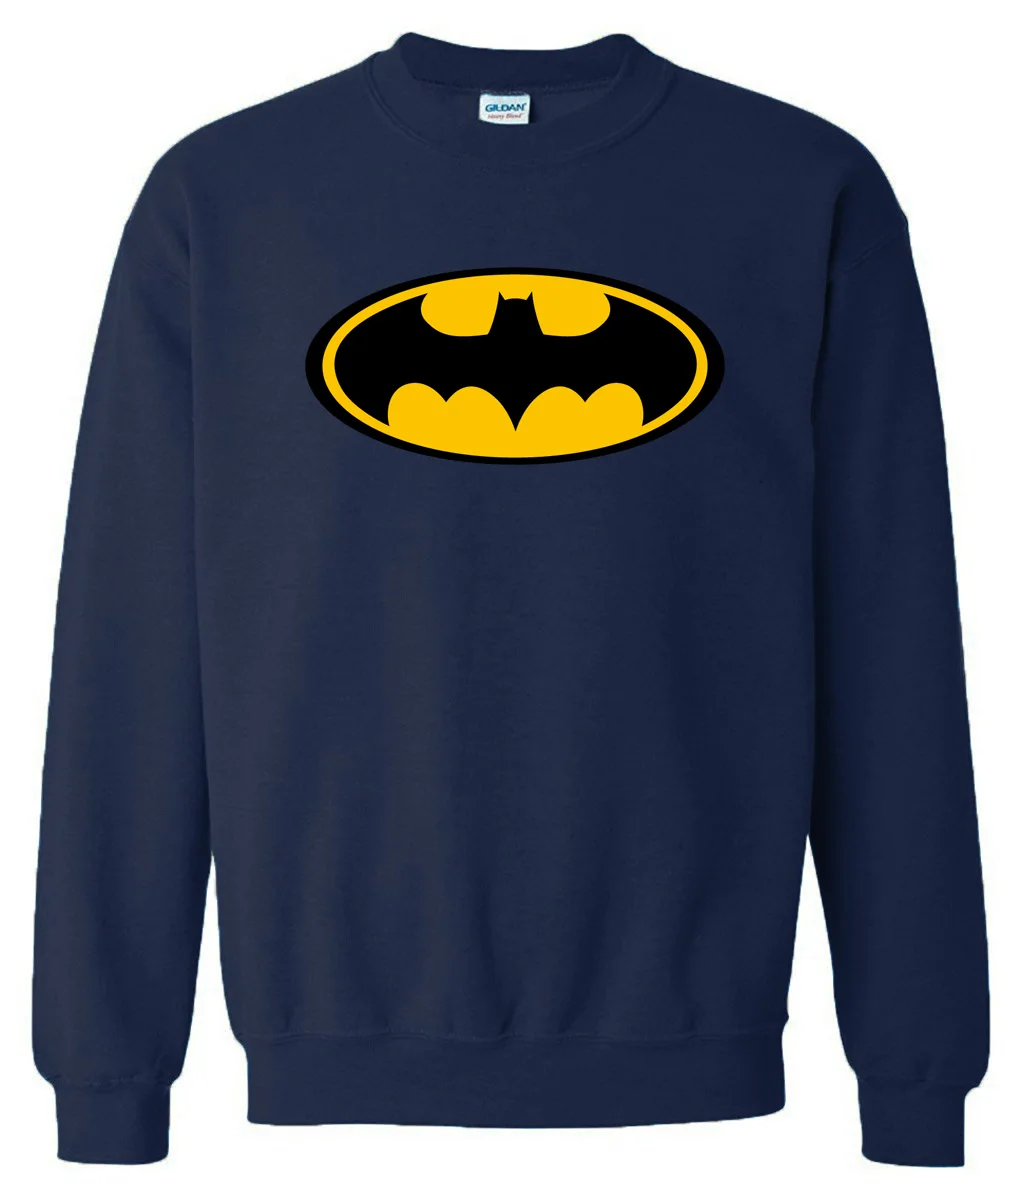 Весенне-зимние толстовки с капюшоном пуловер «Бэтмен» брендовая флисовая толстовка модная мужская спортивная одежда спортивные костюмы harajuku Толстовка - Цвет: dark blue6